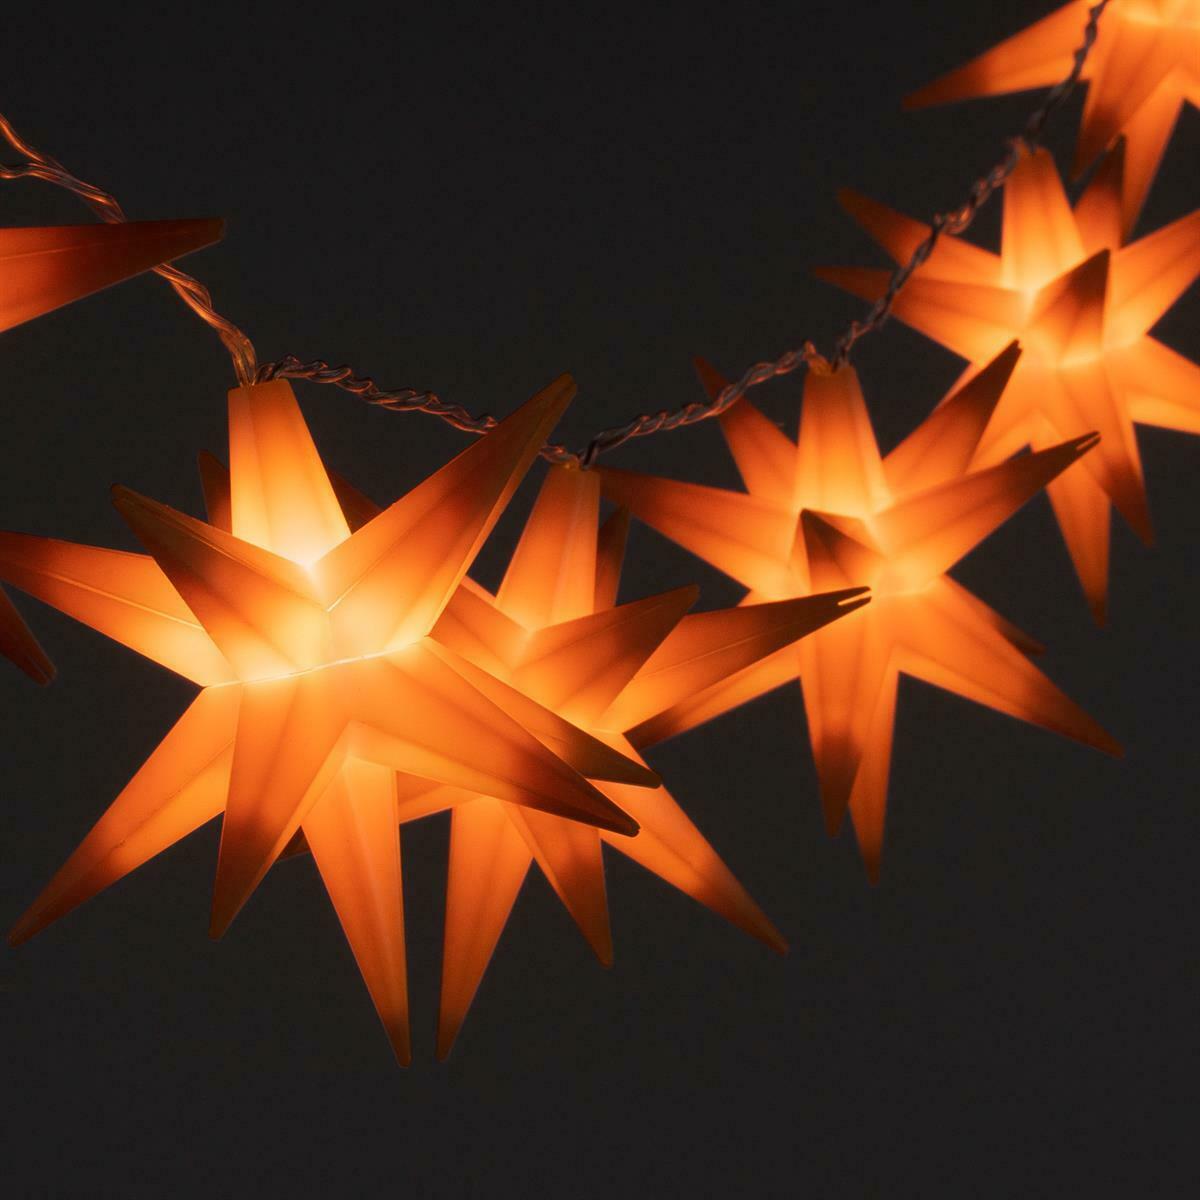 10 Sternenlichterkette Led Orange Weihnachtsdeko aussen